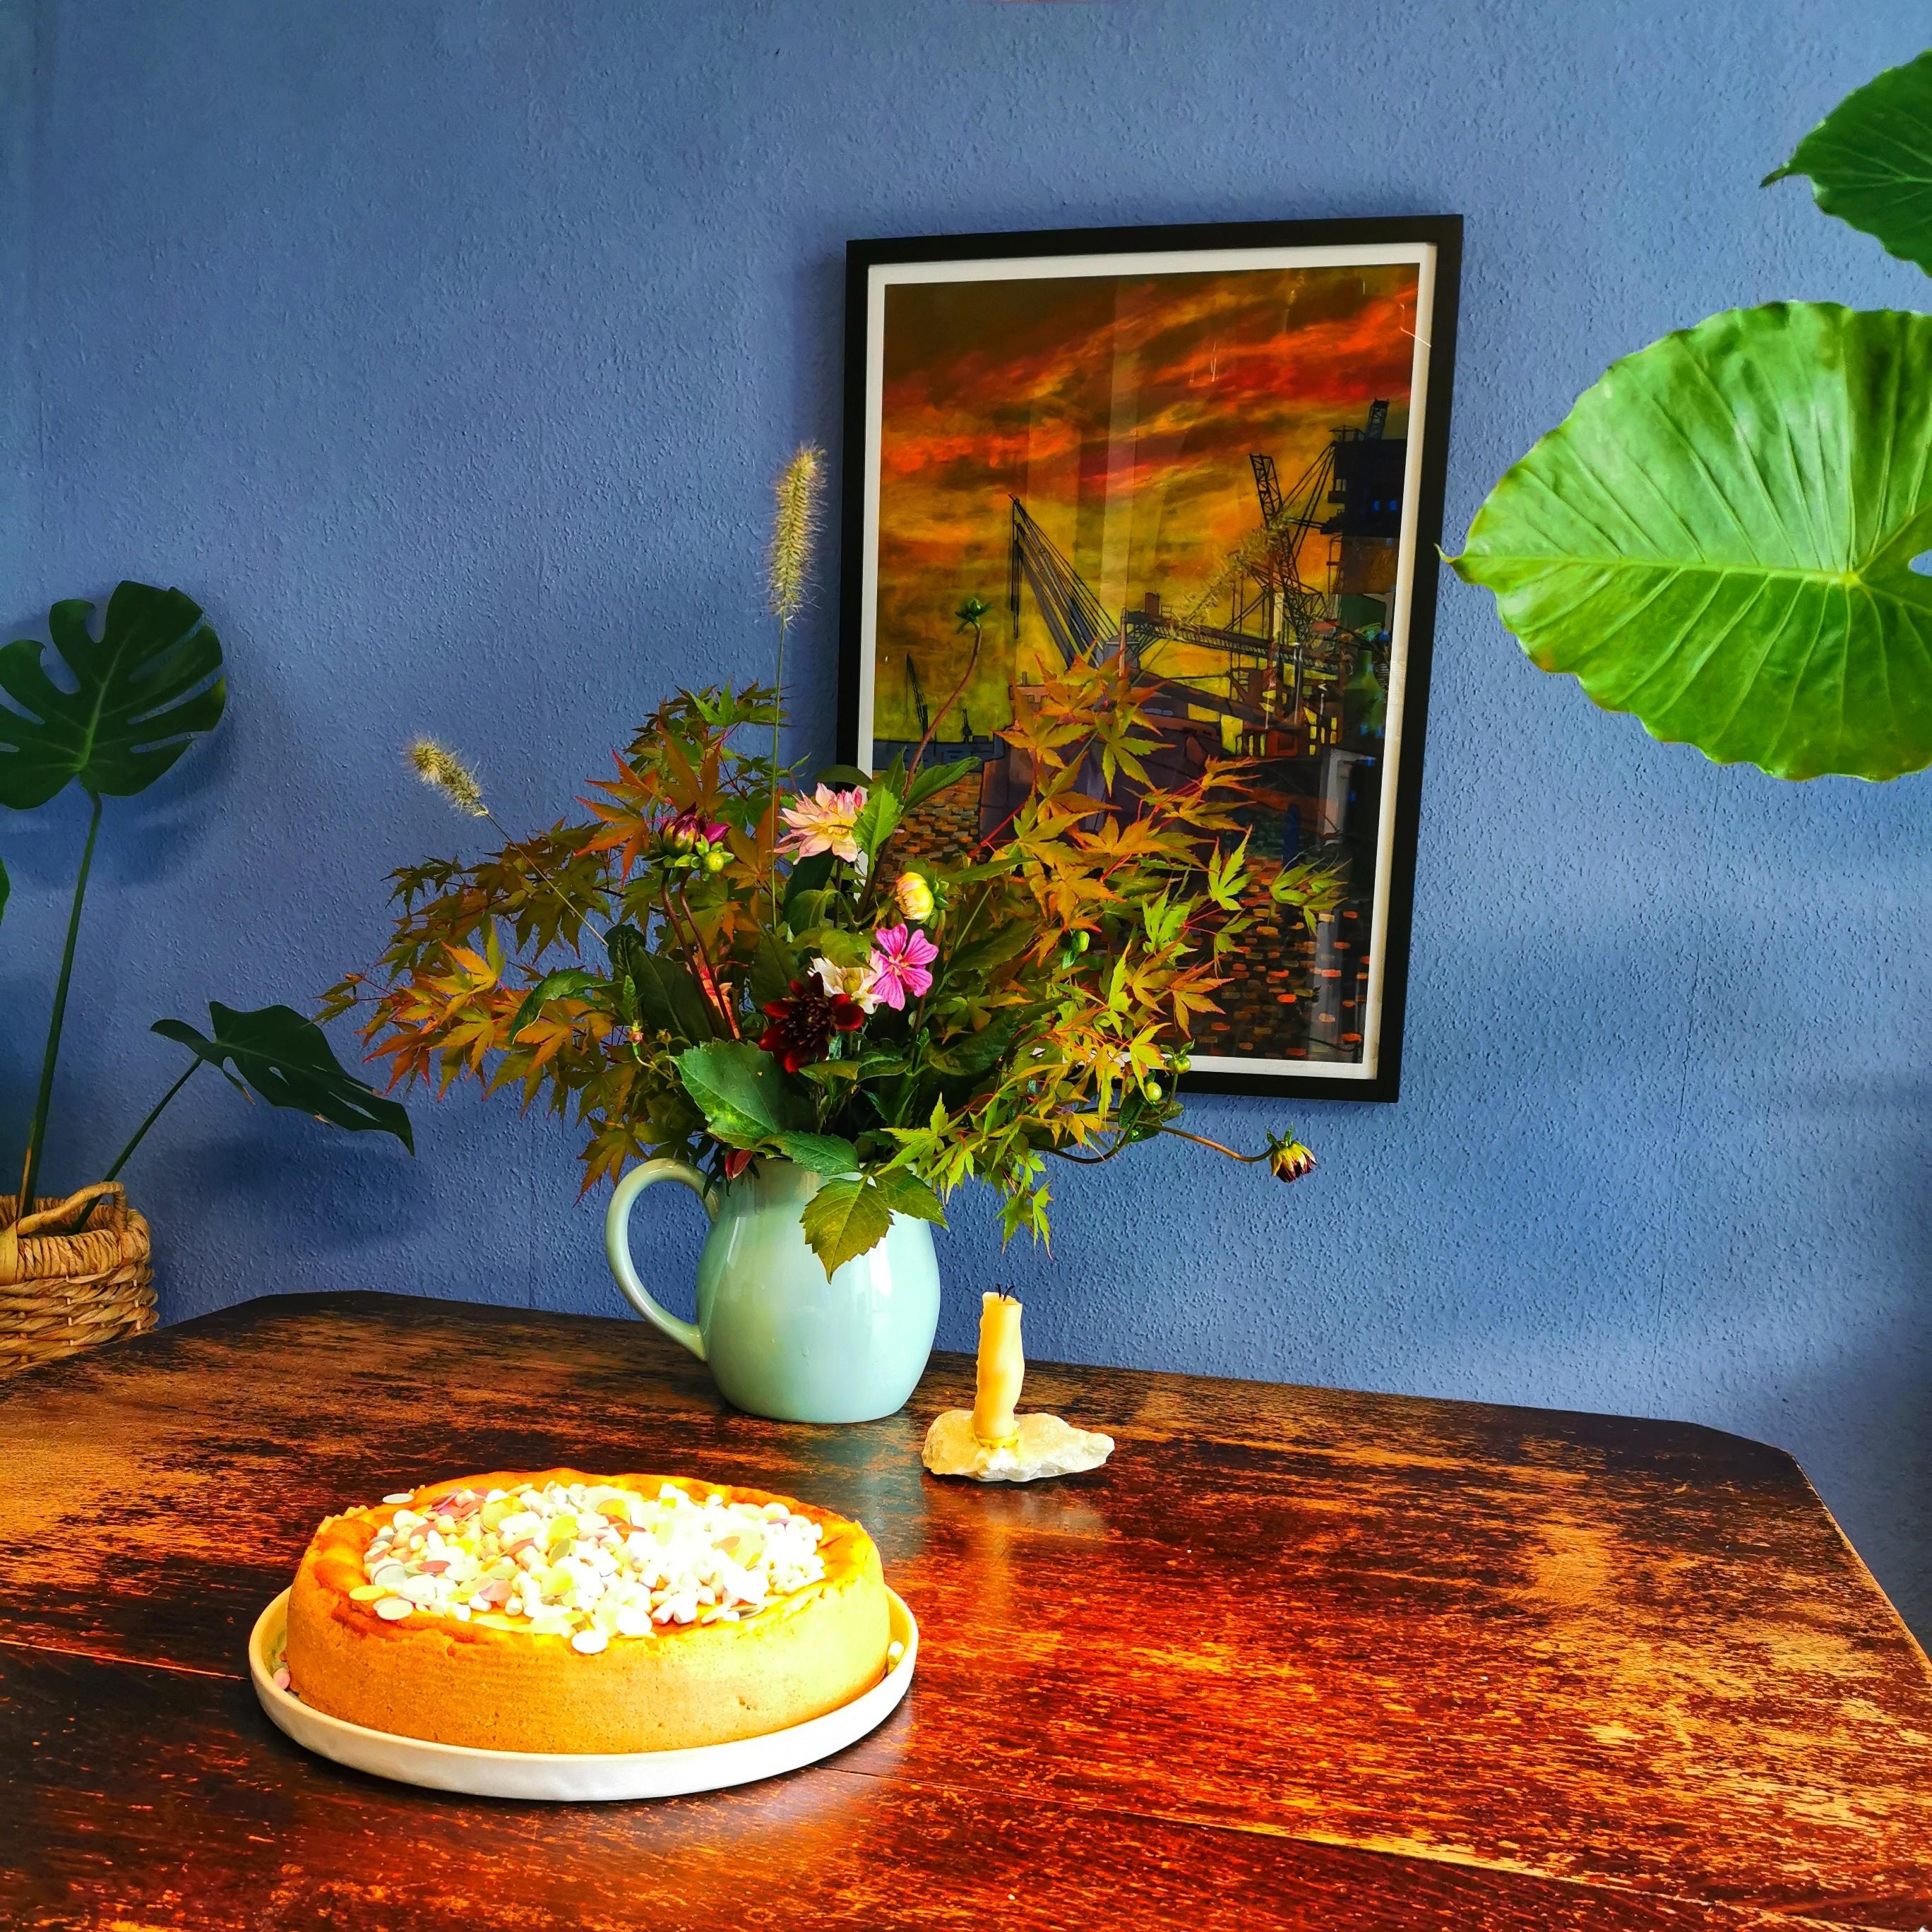 Geburtstagstagstisch 🎂
#käsekuchen #küche #kreidefarbe #dahlien #blumen #blumendeko #küchentisch #blaueküche #Pflanzen 